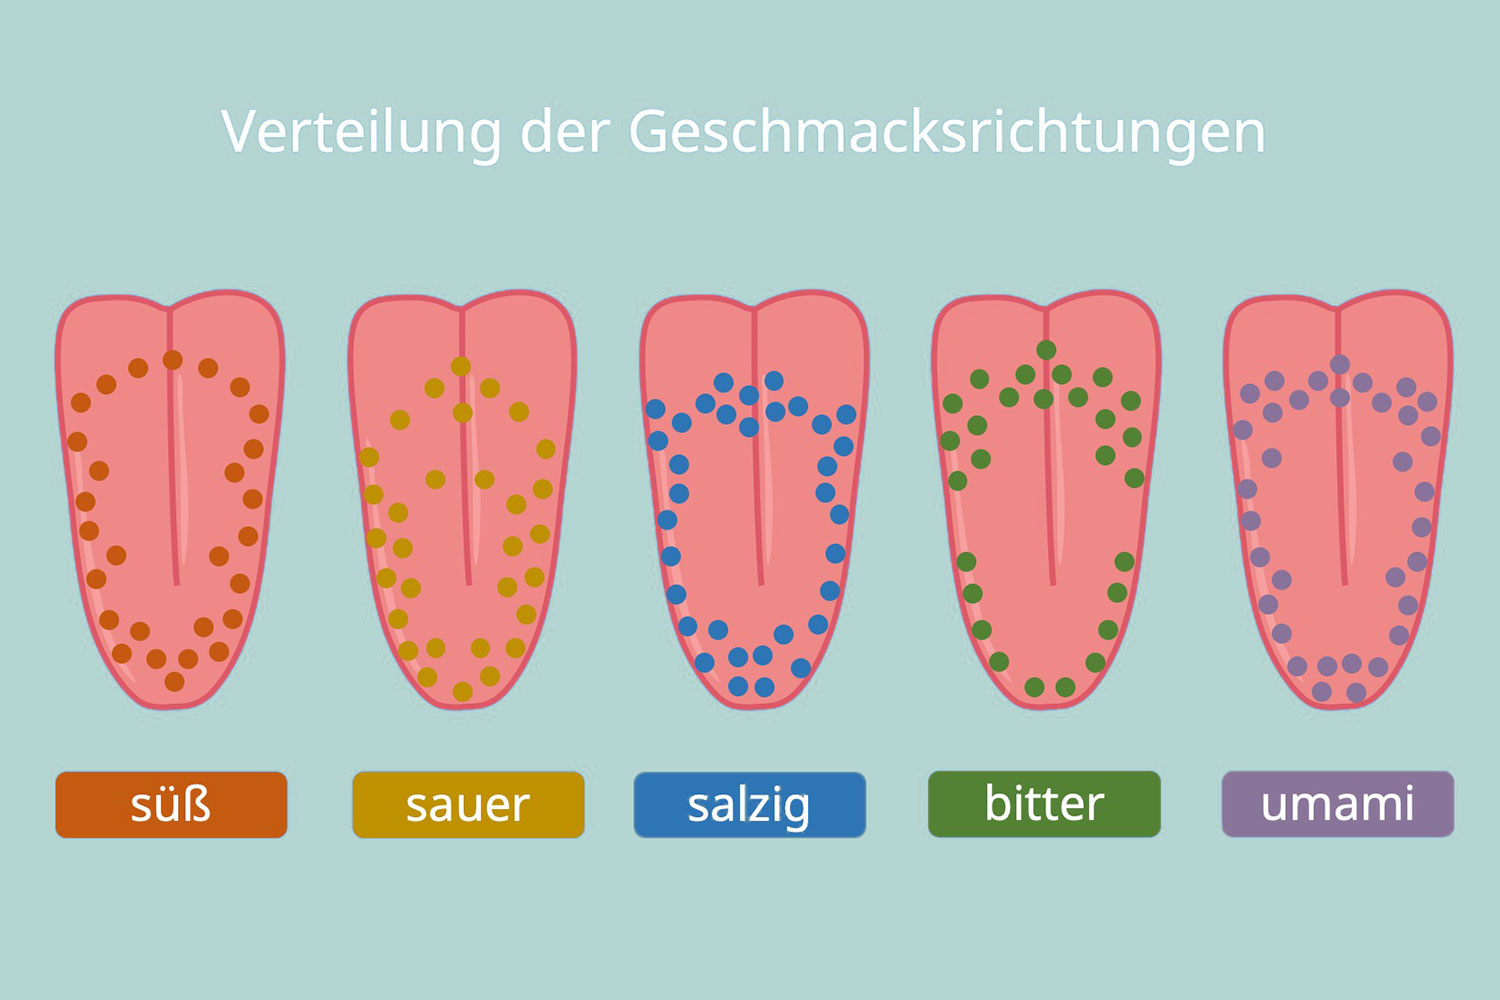 Verteilung der Geschmacksrichtungen auf der Zunge (Schema)